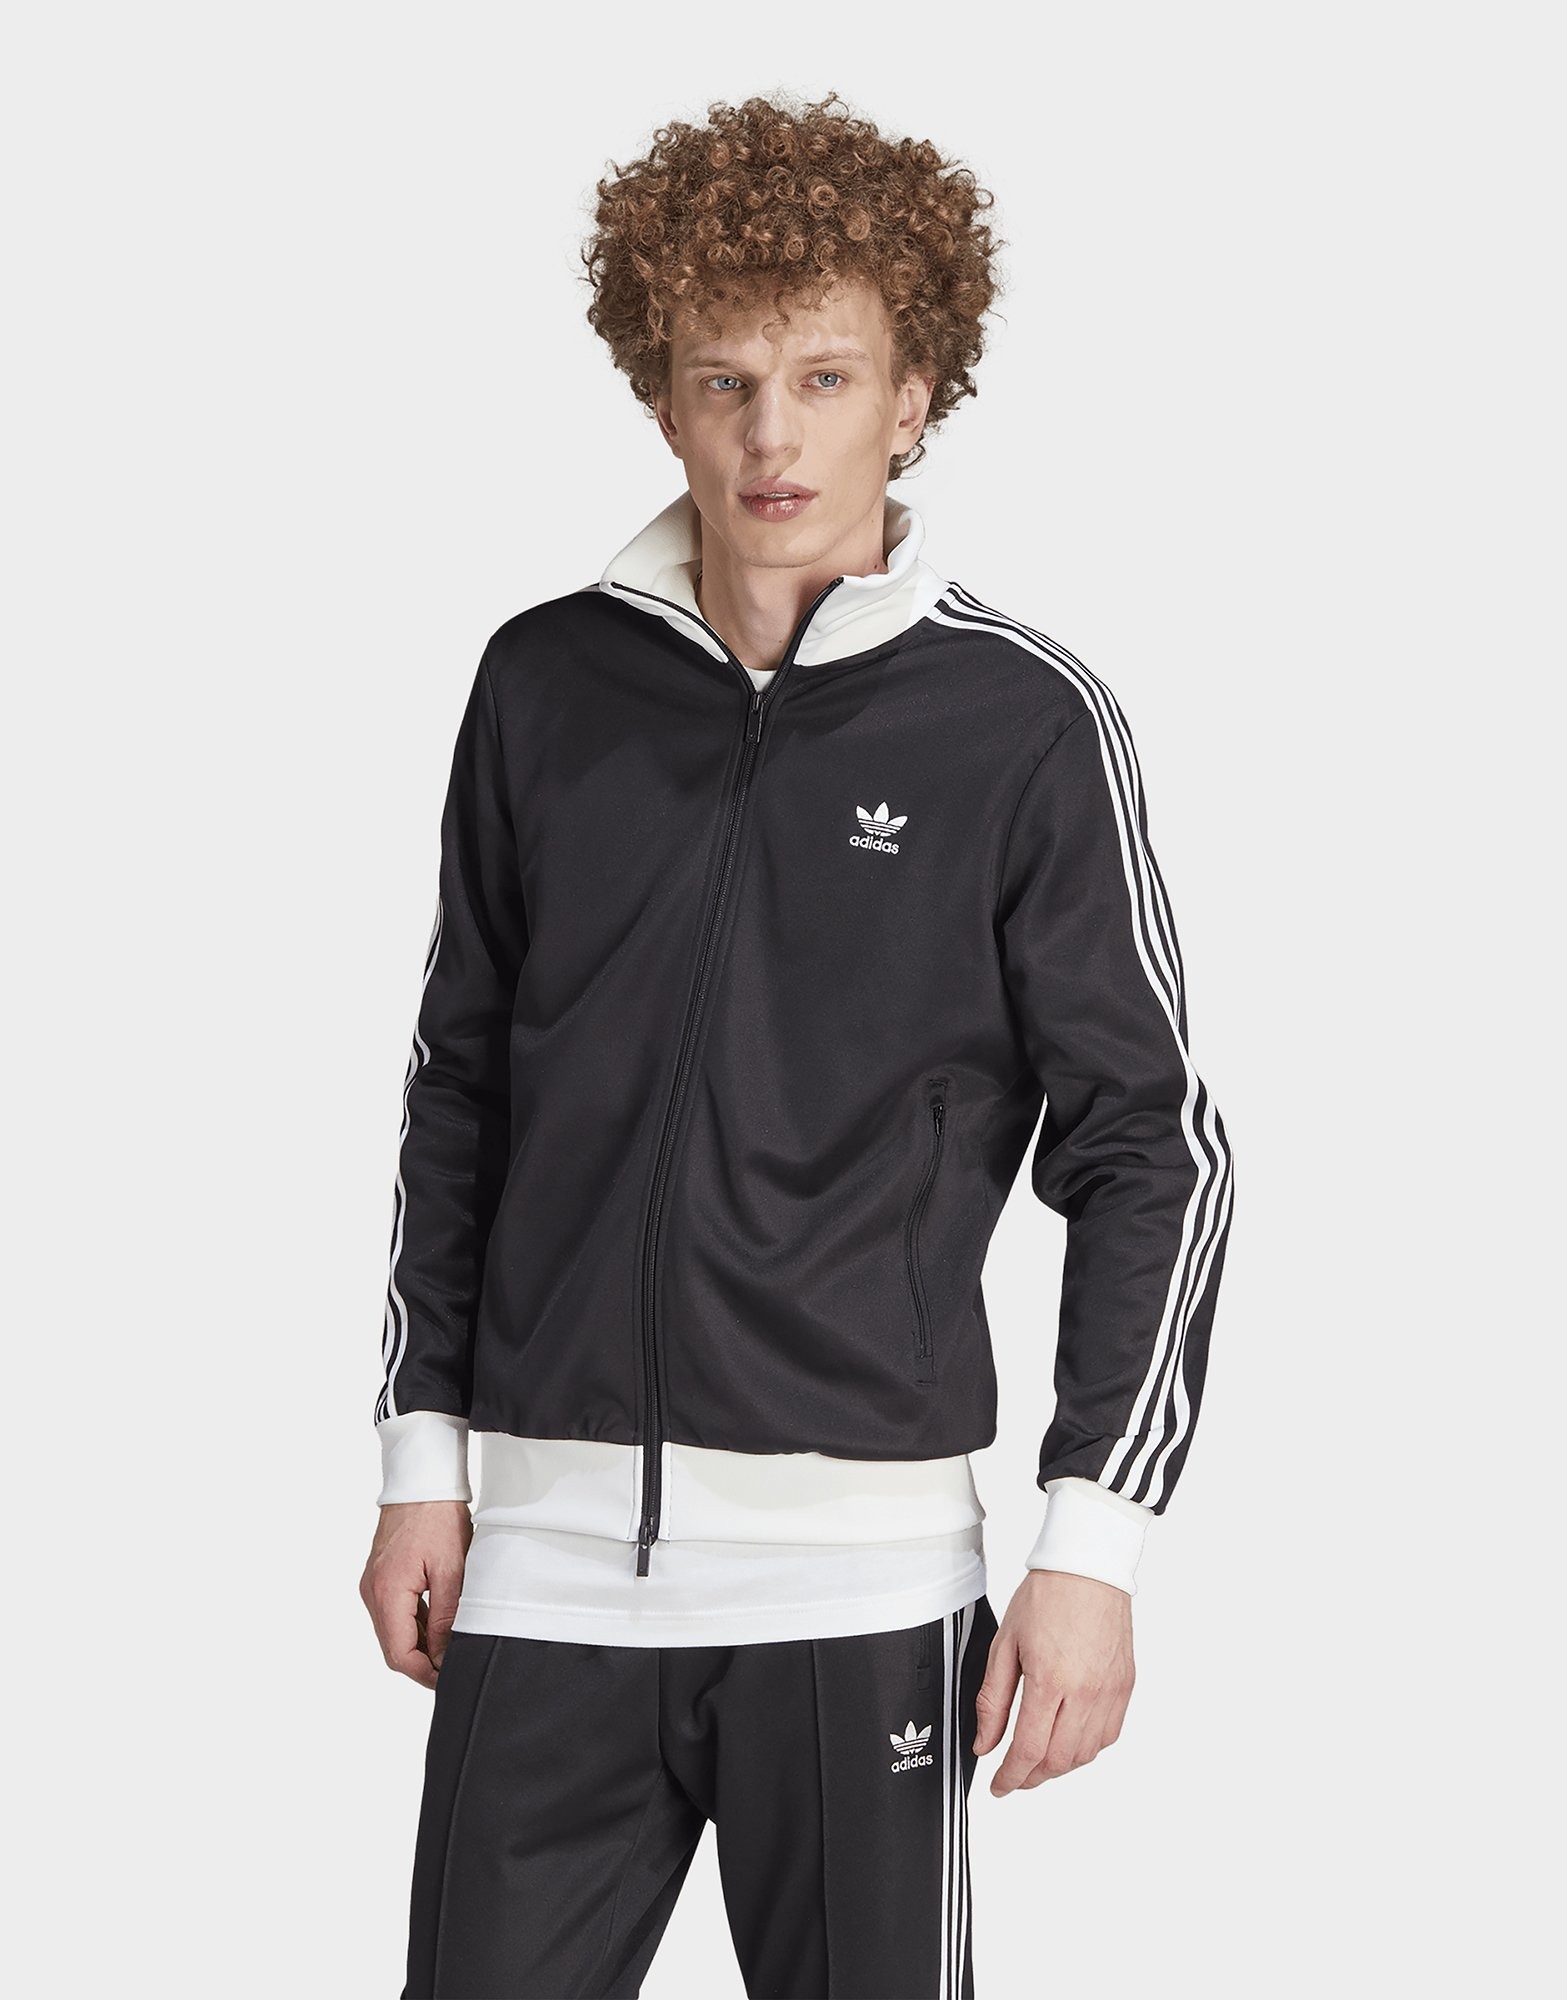 Veste Adidas à Capuche Originals noir et blanc Jacket Homme style